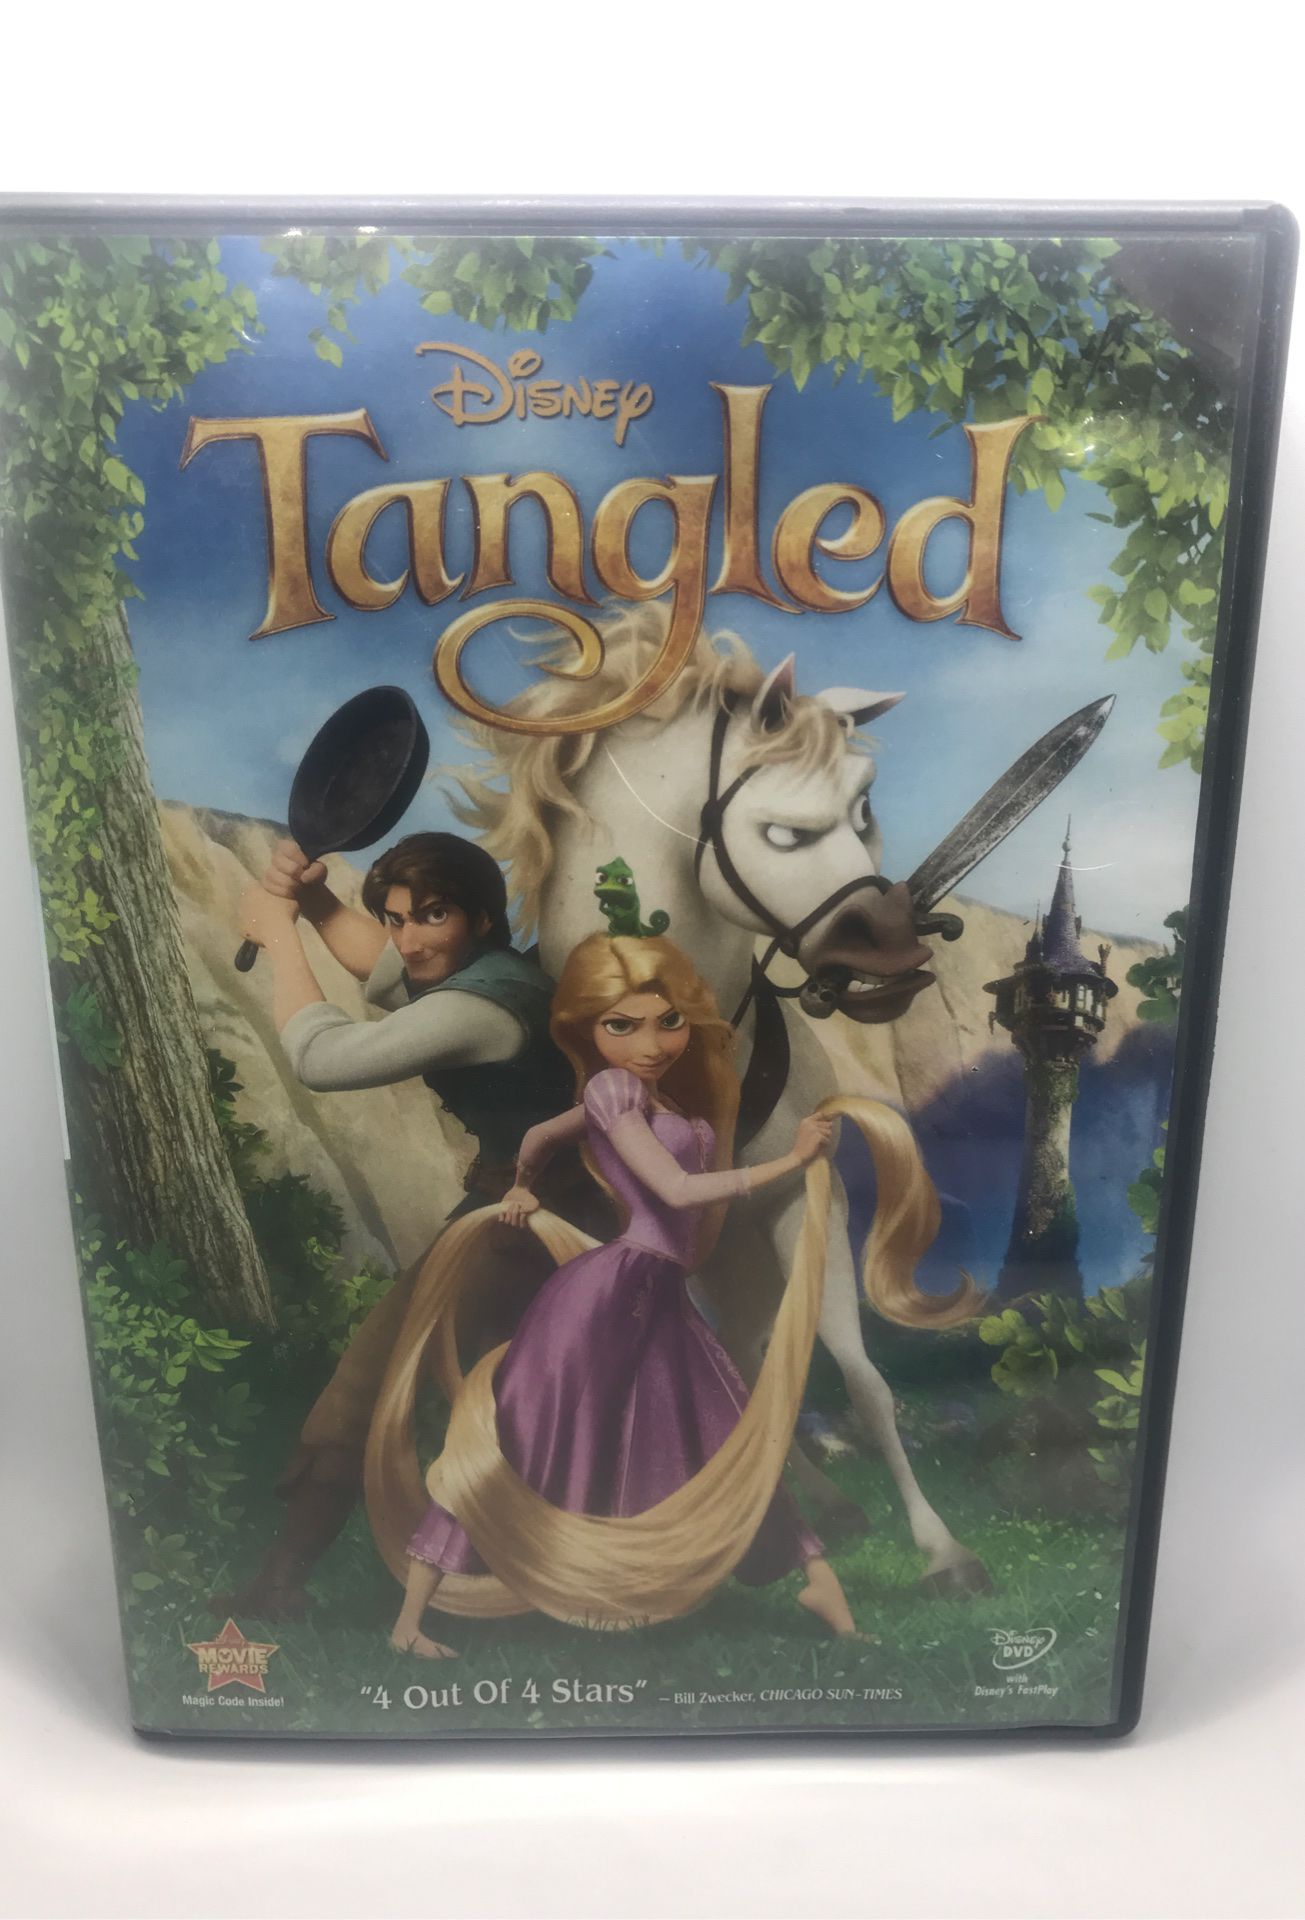 Disney’s Tangled DVD